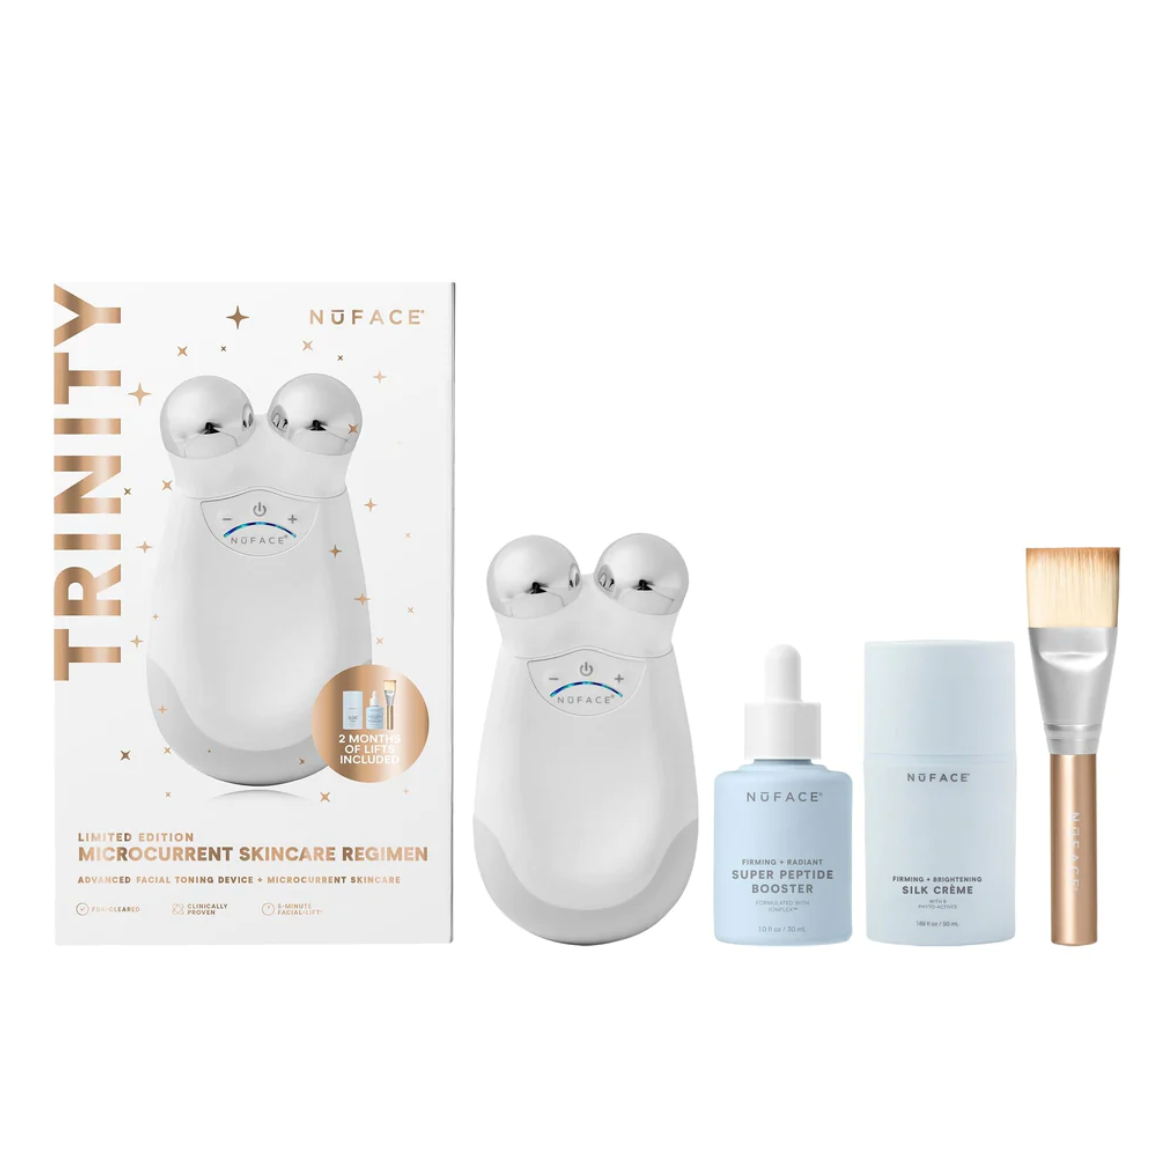 Limited-Edition NuFACE Trinity Microcurrent Skincare Regimen